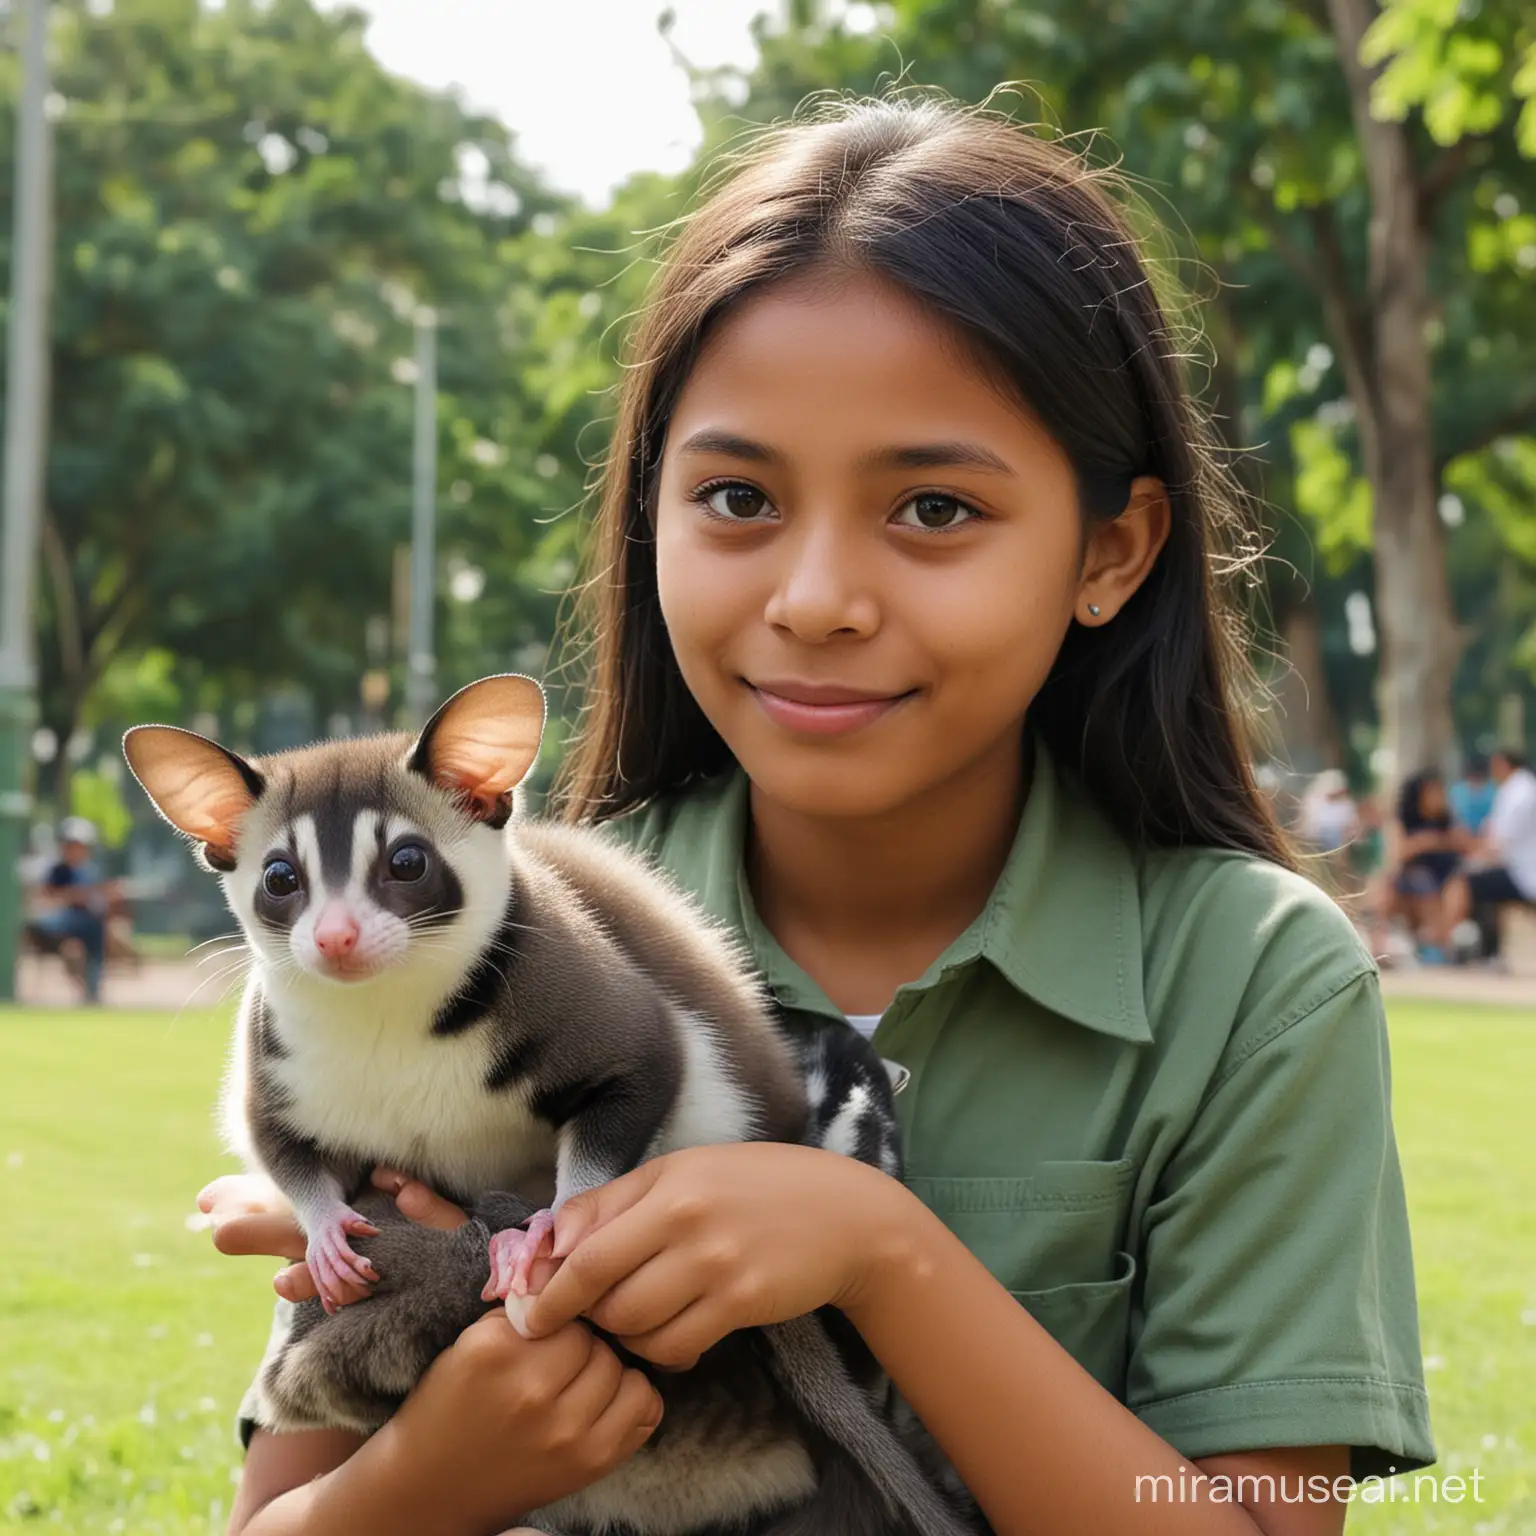 realistis seorang gadis indonesia umur 12 tahun duduk di taman bersama peliharaannya sugar glider, HD